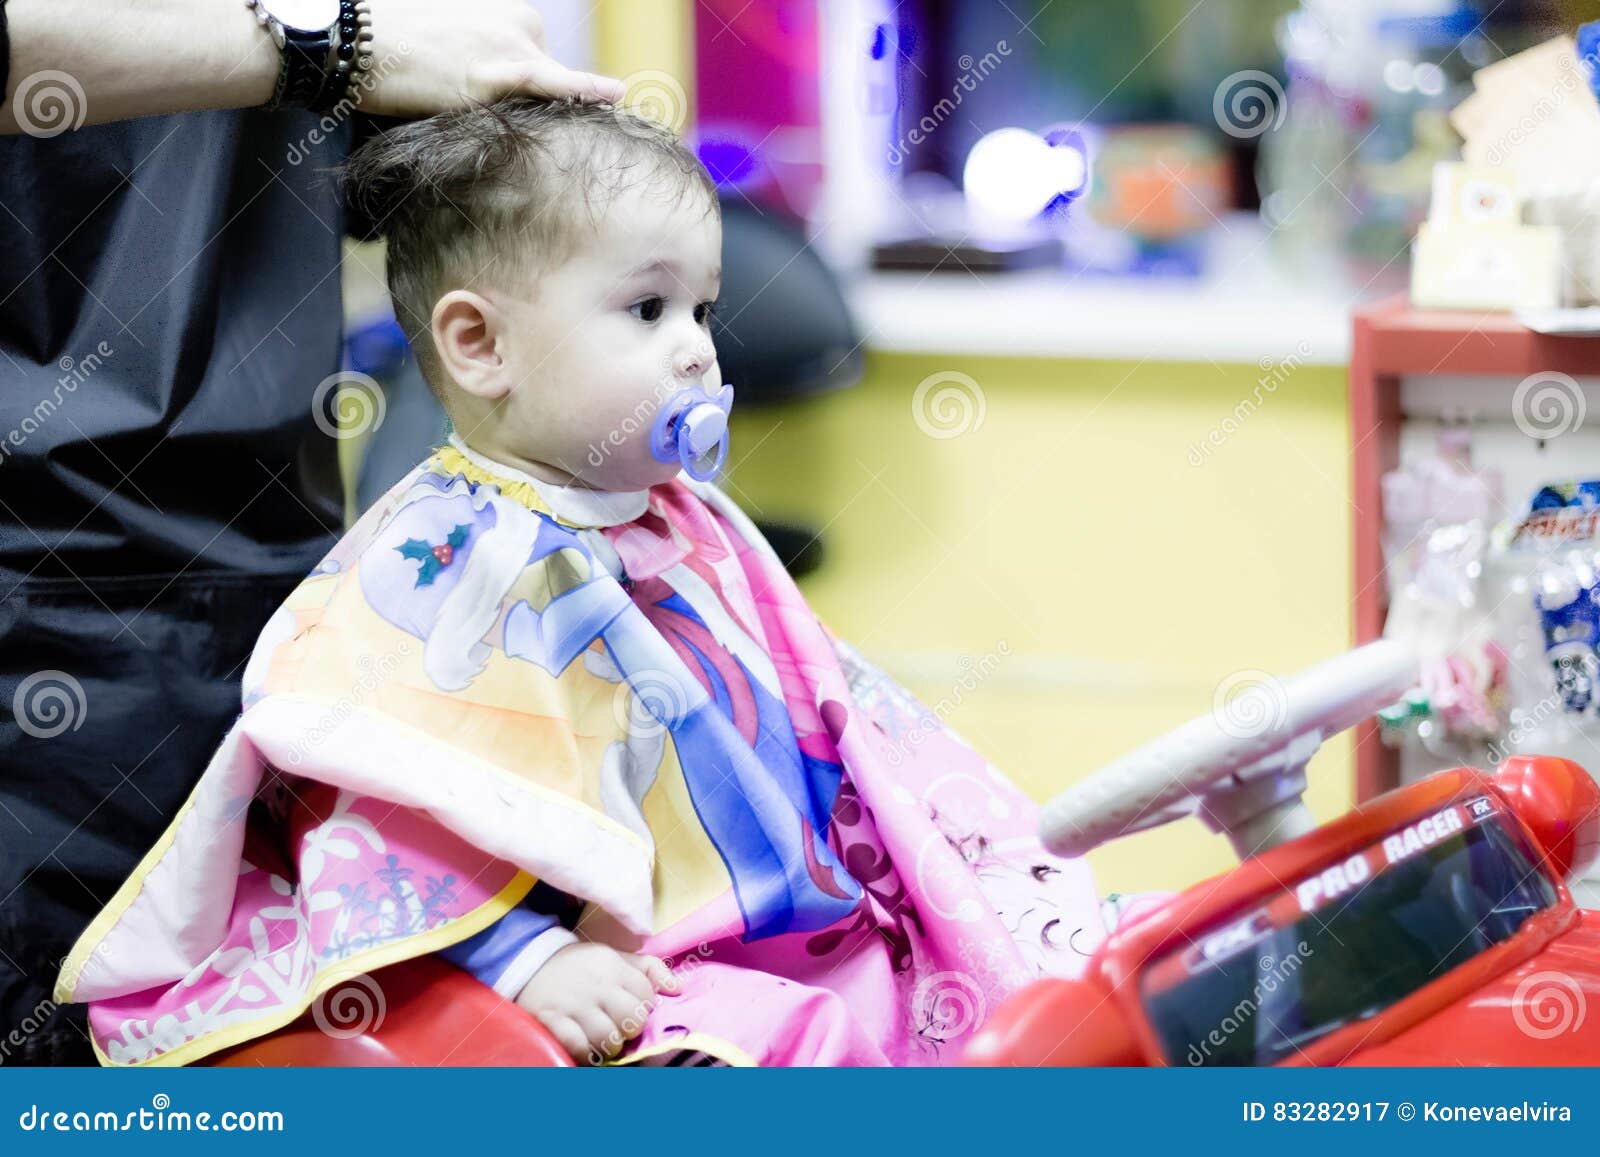 extravagante cabeleireiro corte cadeira crianças carro salão cadeira